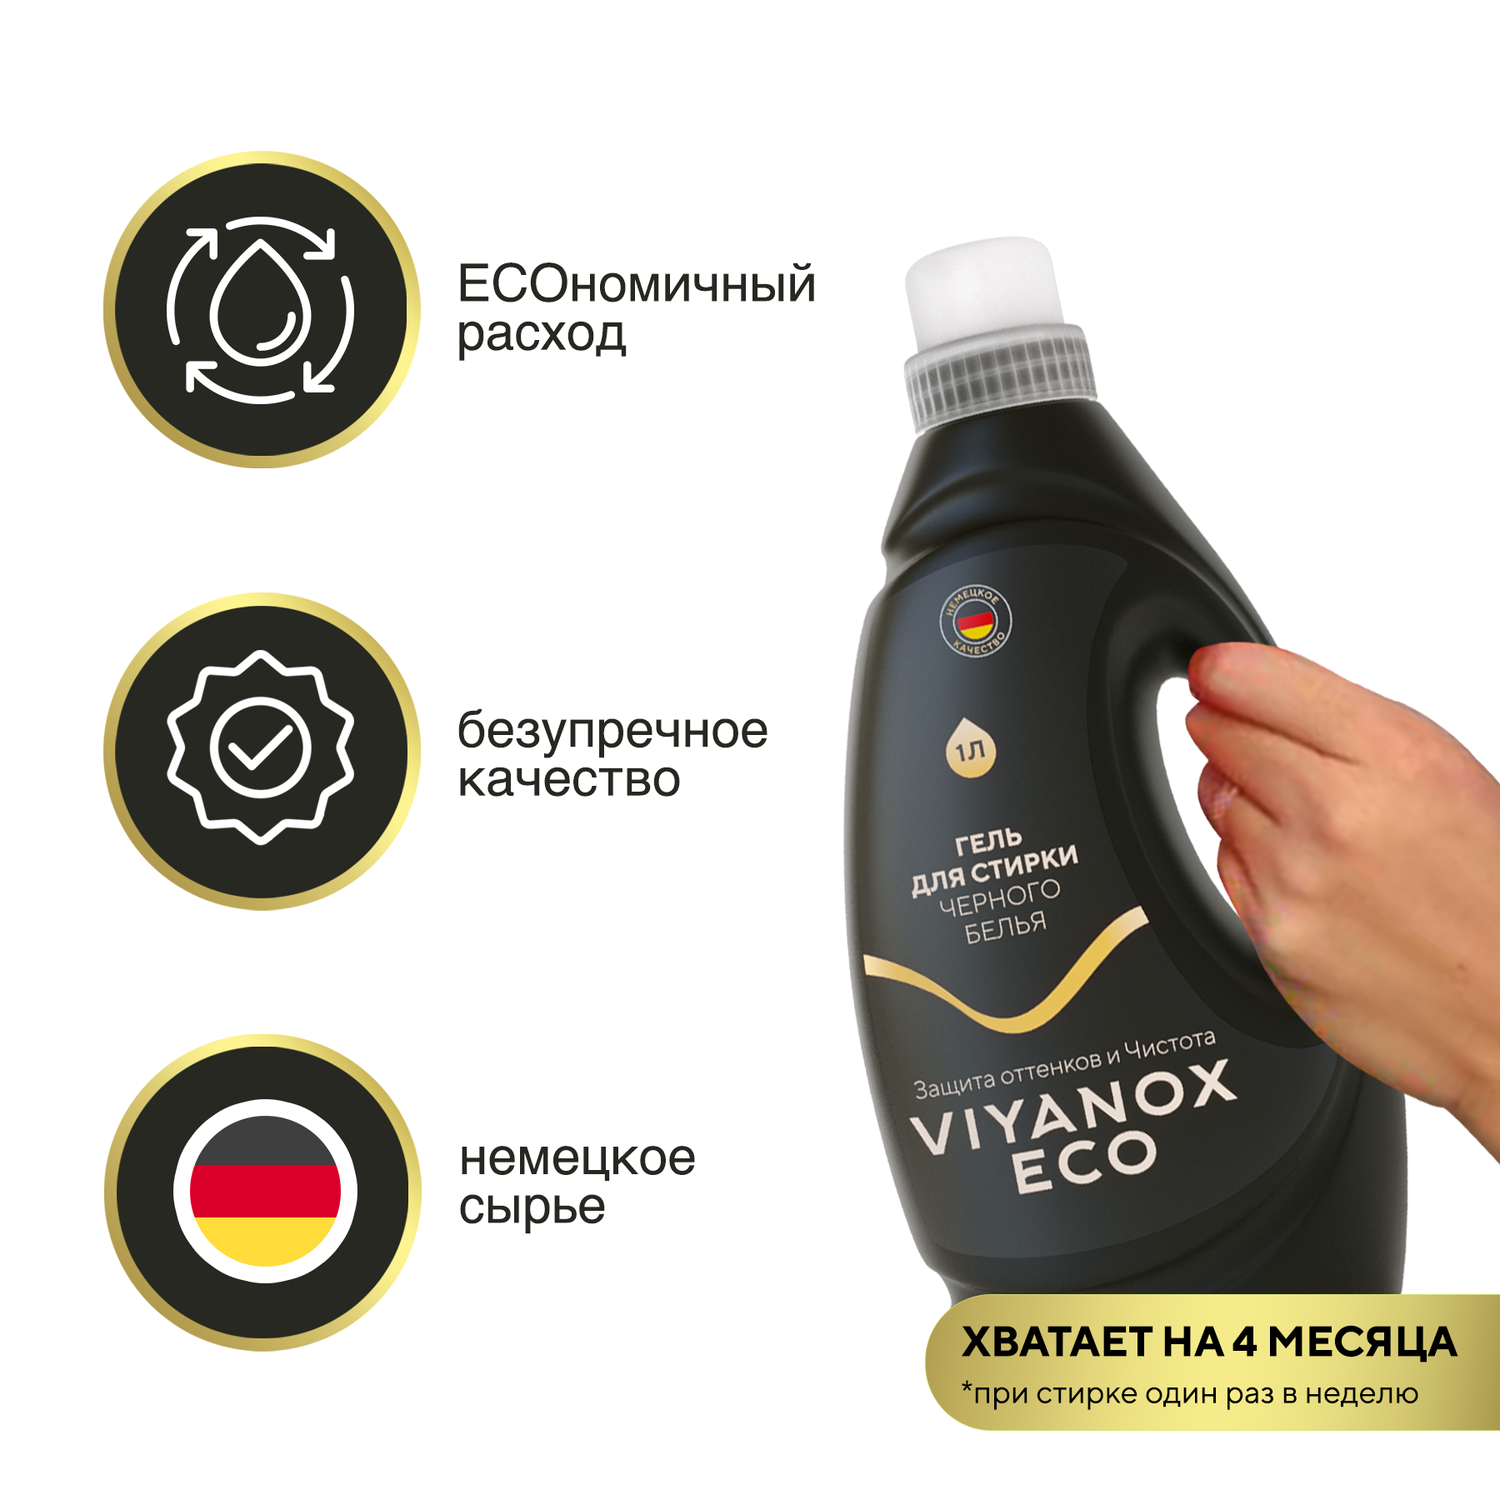 Гель для стирки ECO Viyanox для черного белья - фото 6